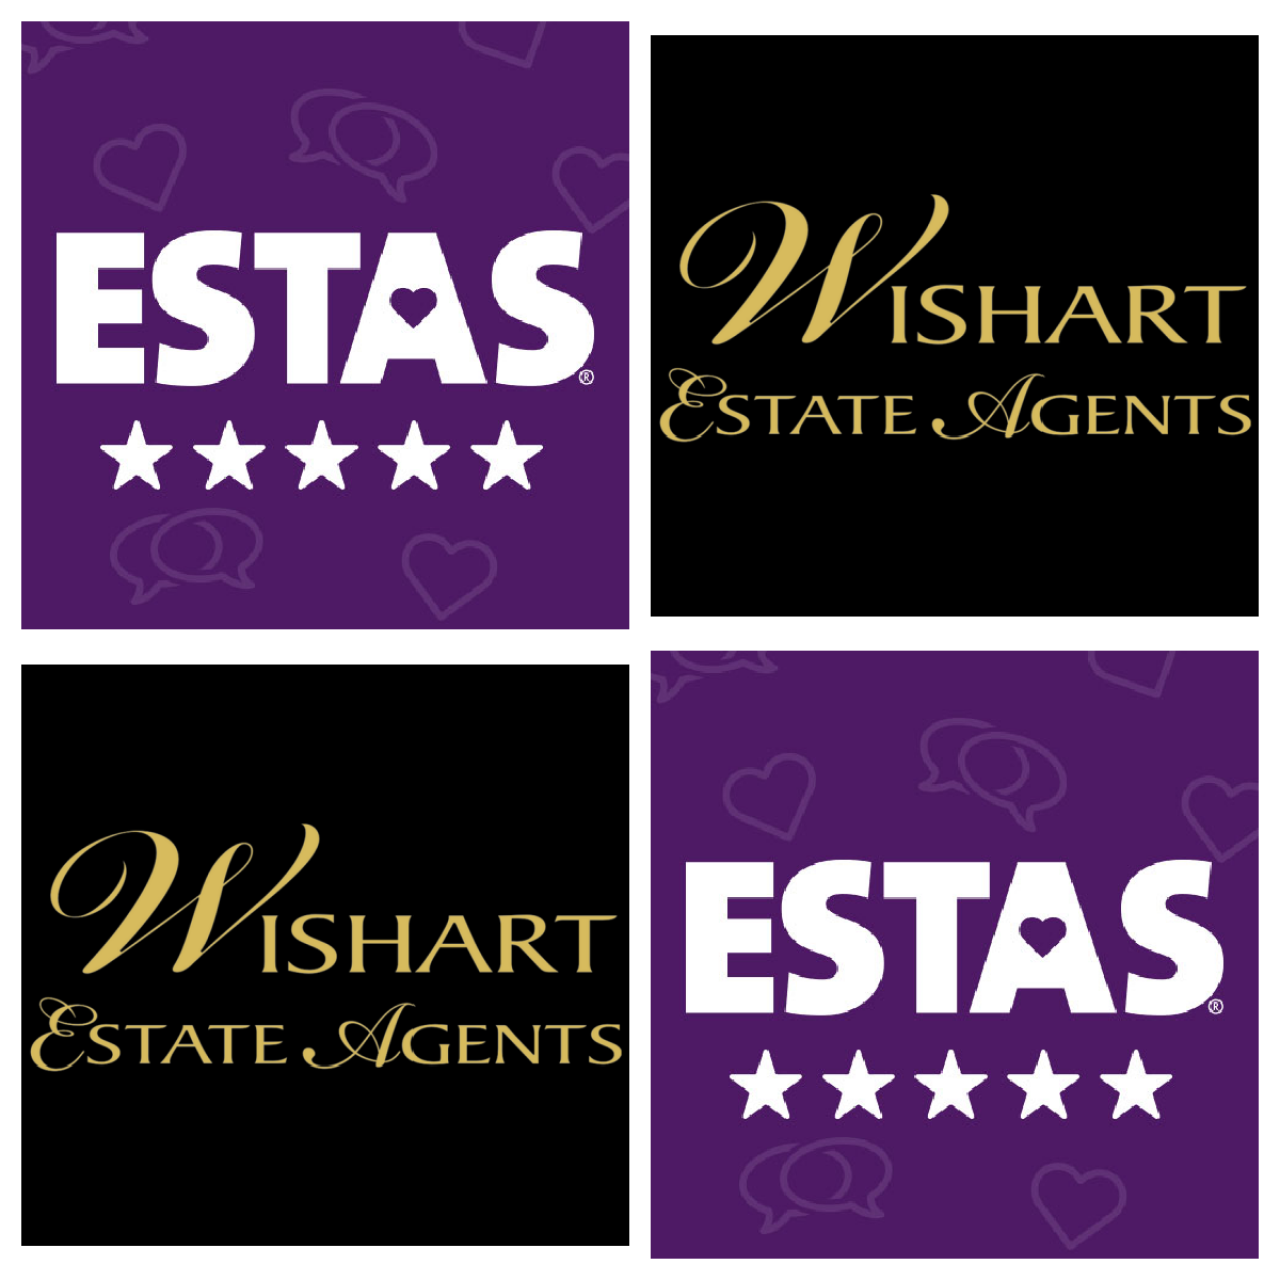 >Wishart EA logo & ESTAS Awards logo